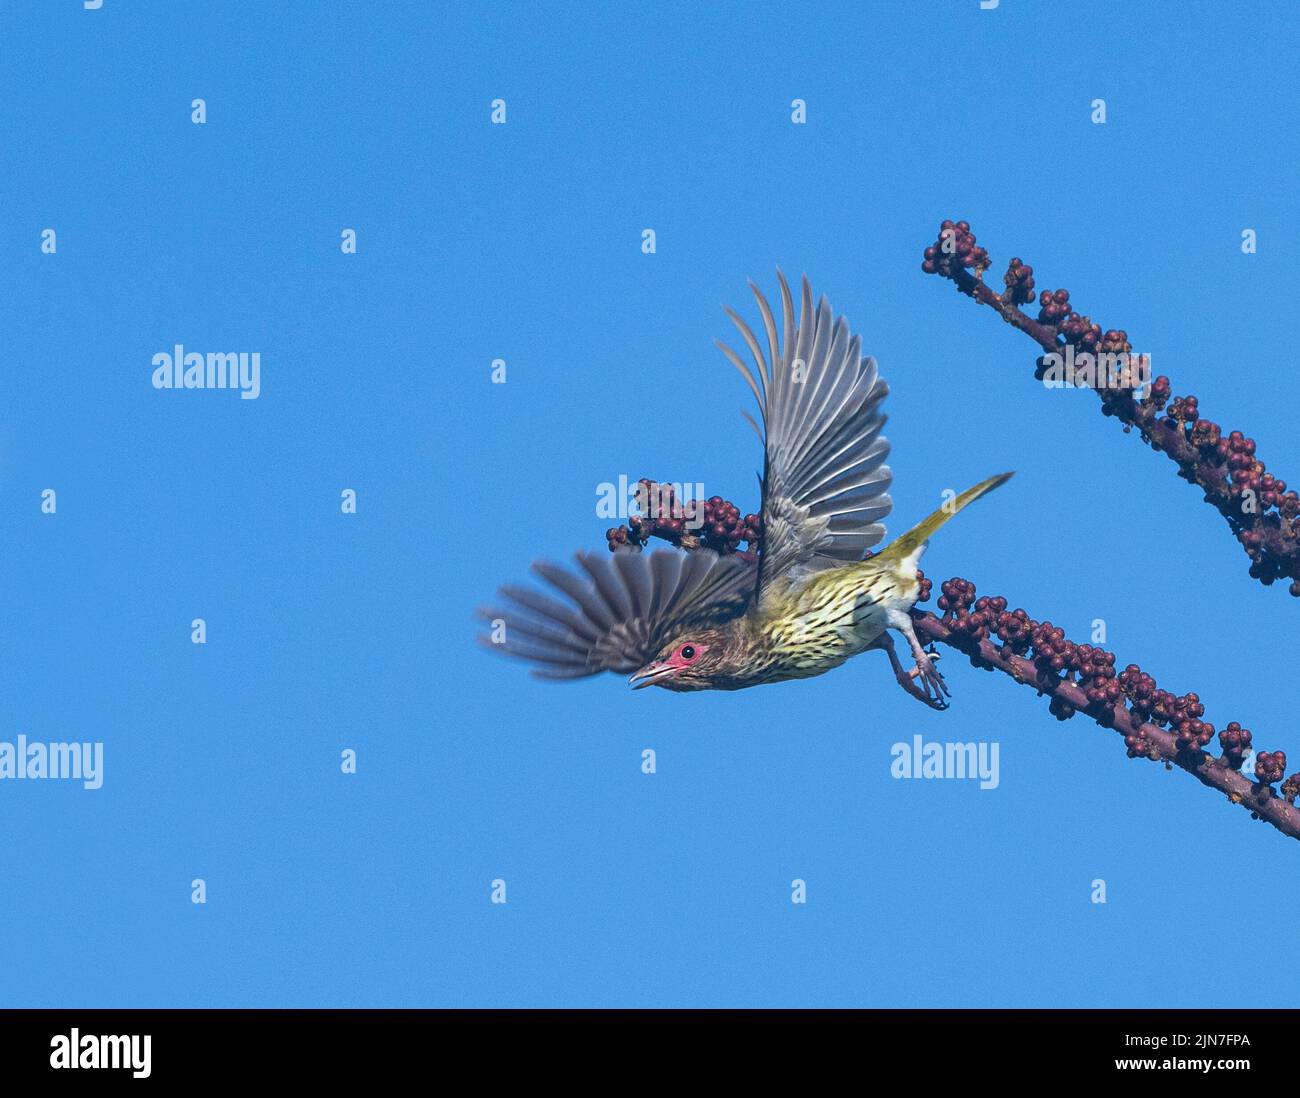 Oiseau de Figbird Australasien (Sphecotheres flaviventris) décollage d'une succursale avec baies, Mungulla Station, Queensland, Queensland, Queensland, Australie Banque D'Images